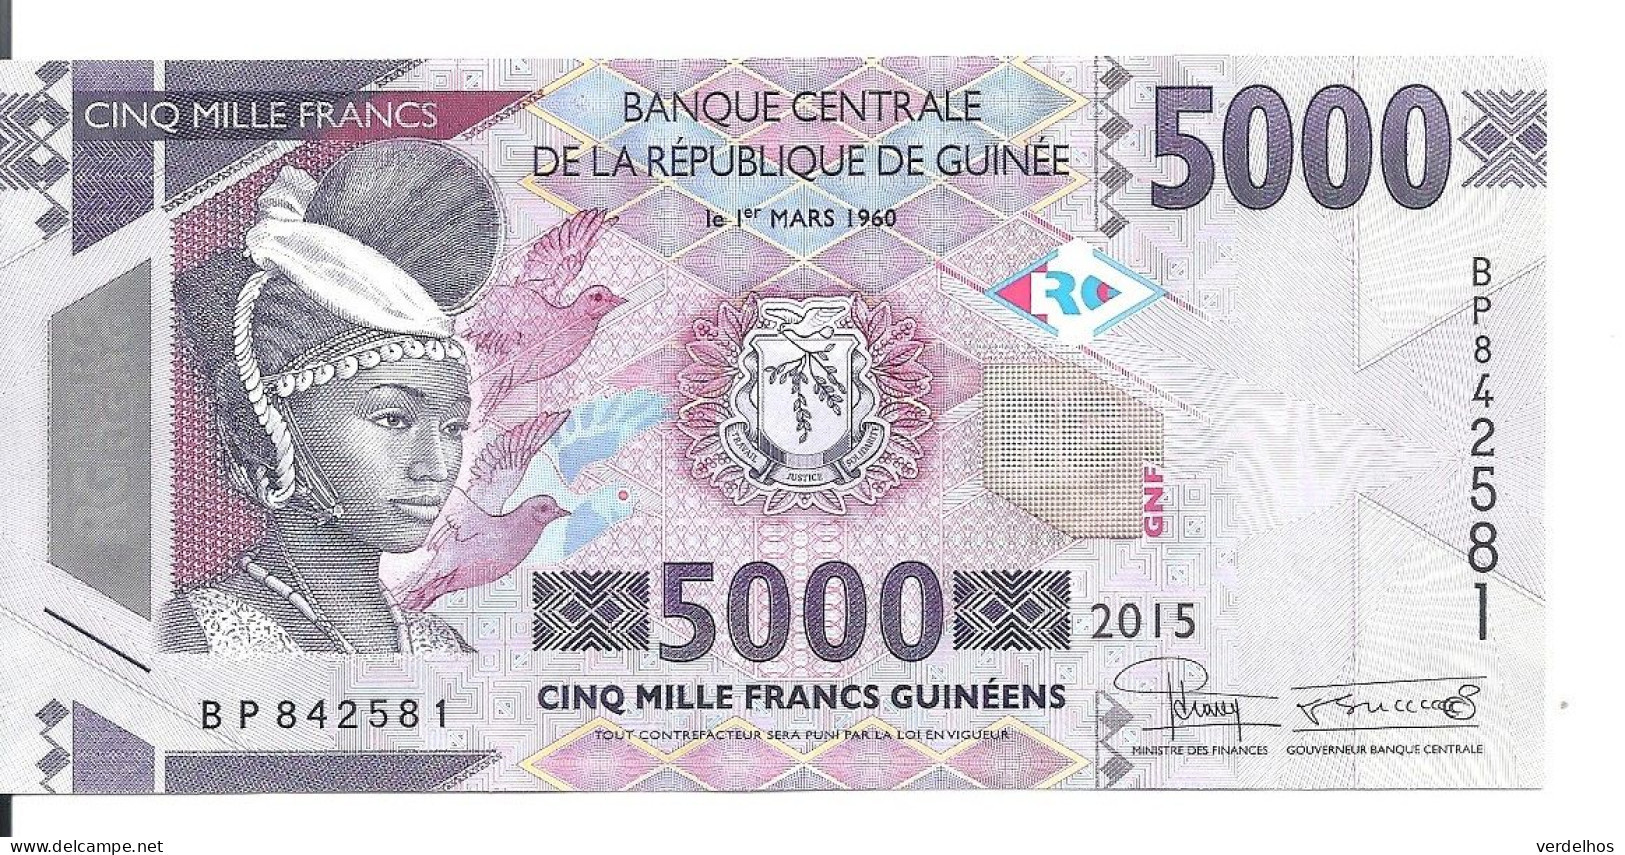 GUINEE 5000 FRANCS 2015 UNC P 49 - Guinea